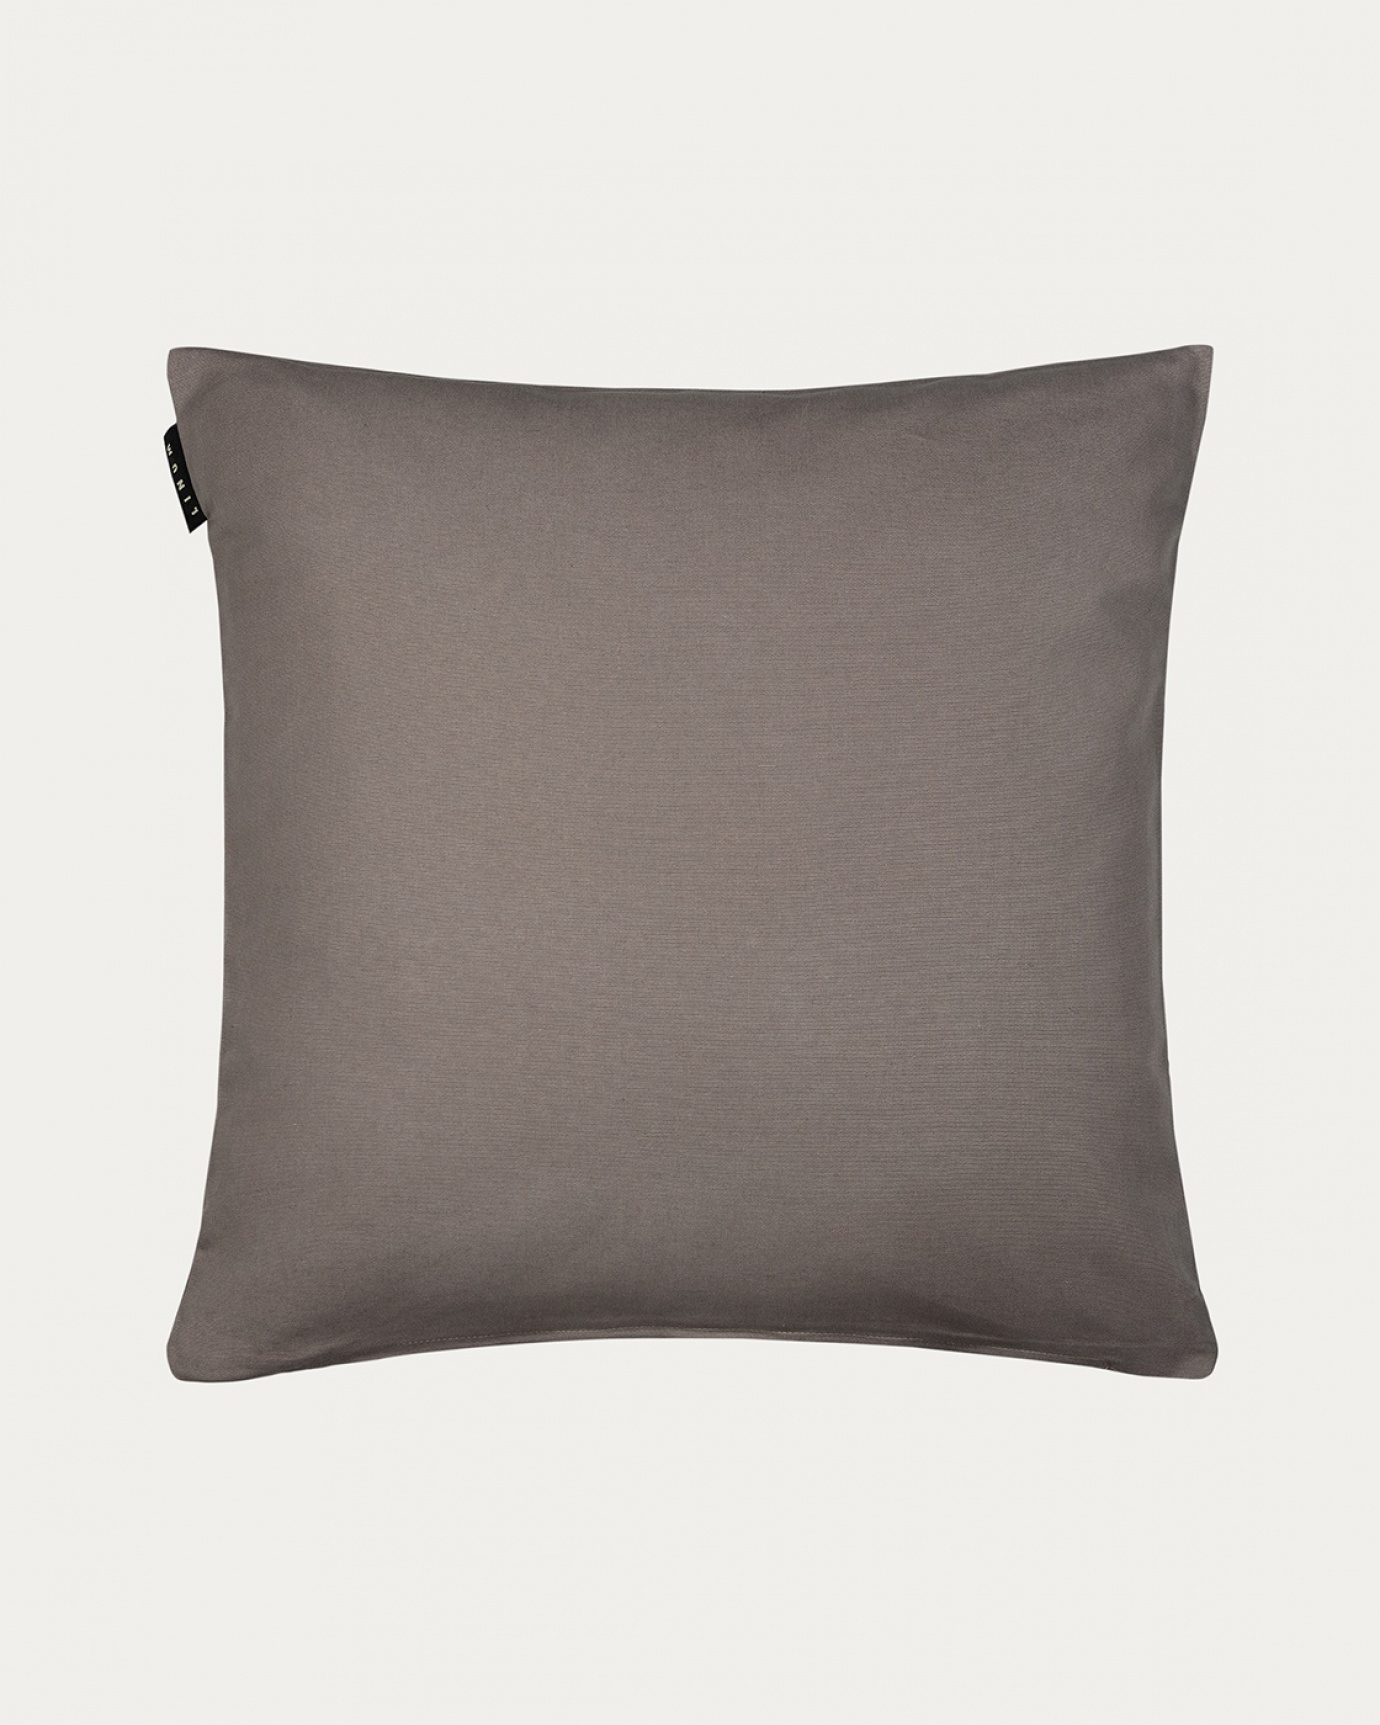 Produktbild maulwurfbraun ANNABELL Kissenhülle aus weicher Baumwolle von LINUM DESIGN. Größe 50x50 cm.